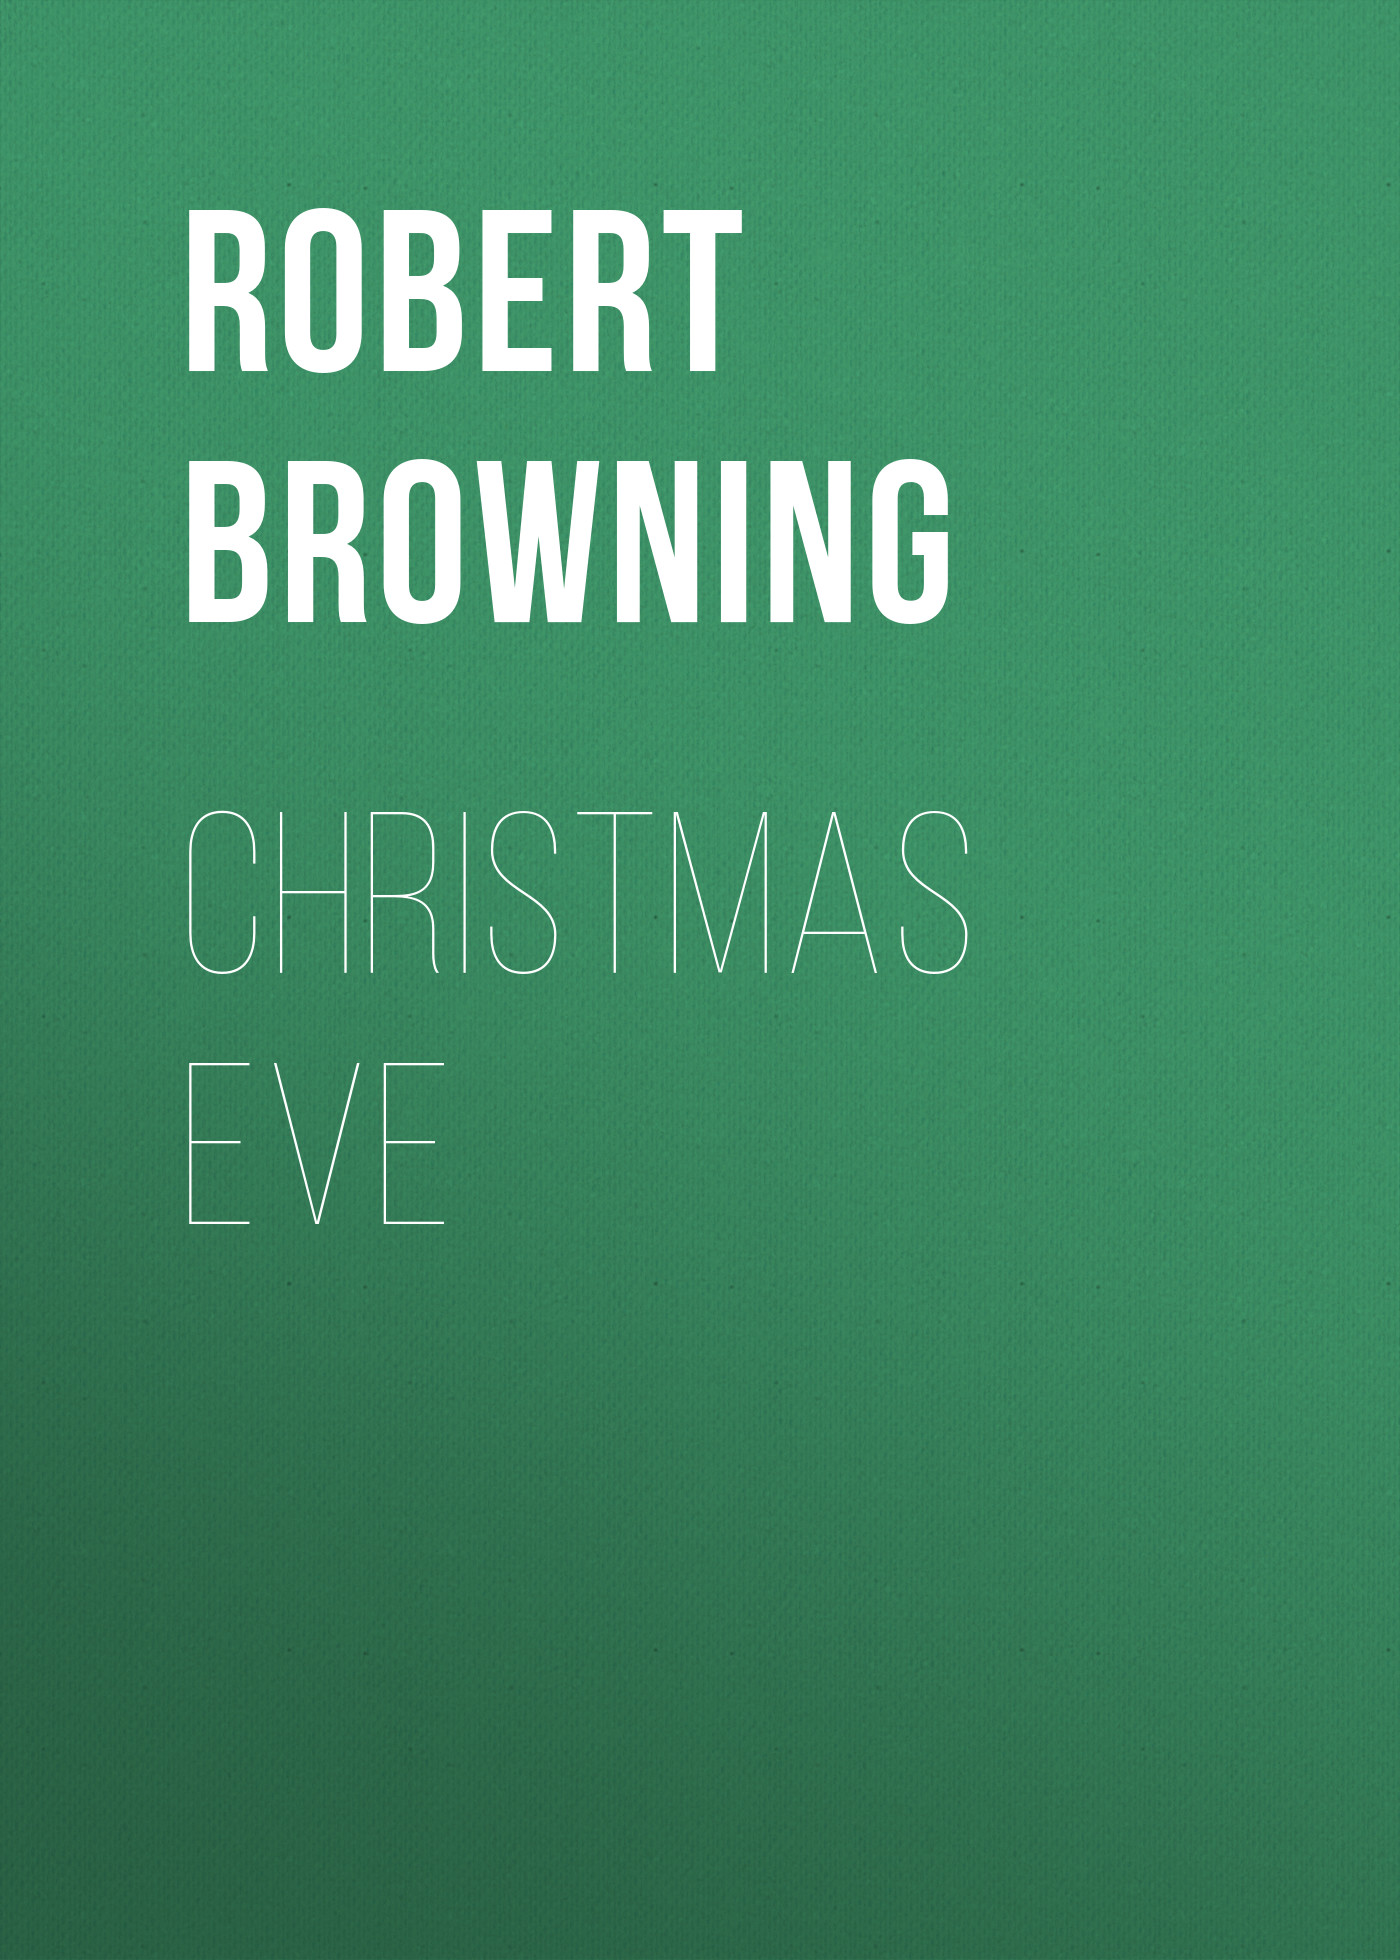 Книга Christmas Eve из серии , созданная Robert Browning, может относится к жанру Зарубежные стихи, Поэзия, Зарубежная старинная литература, Зарубежная классика. Стоимость электронной книги Christmas Eve с идентификатором 36323612 составляет 0 руб.